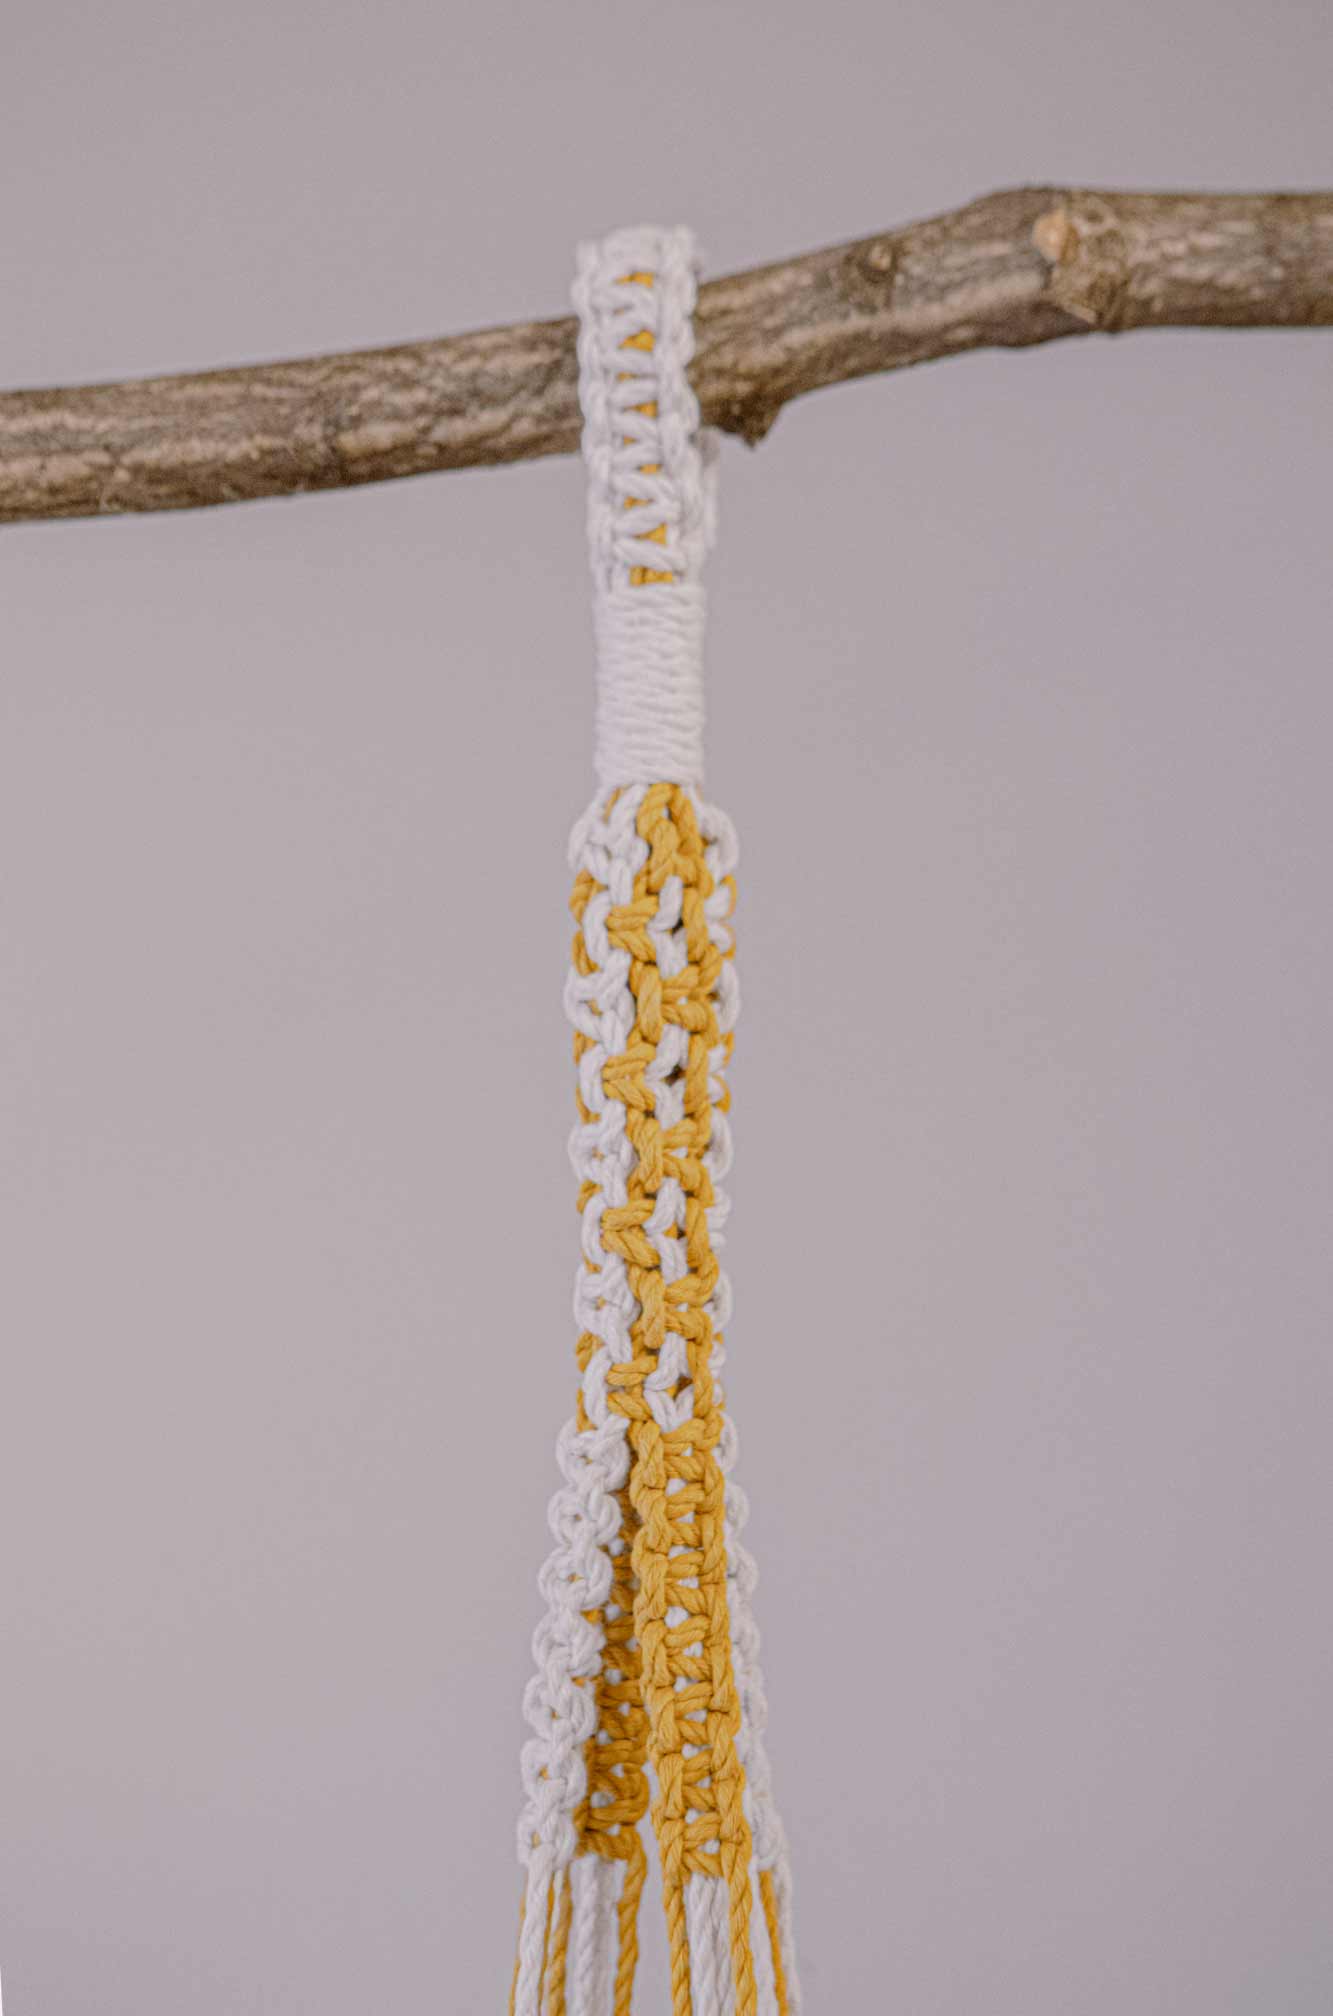 Detalle del agarre de un macetero artesanal de macramé hecho de algodón ecológico en color crudo y mostaza